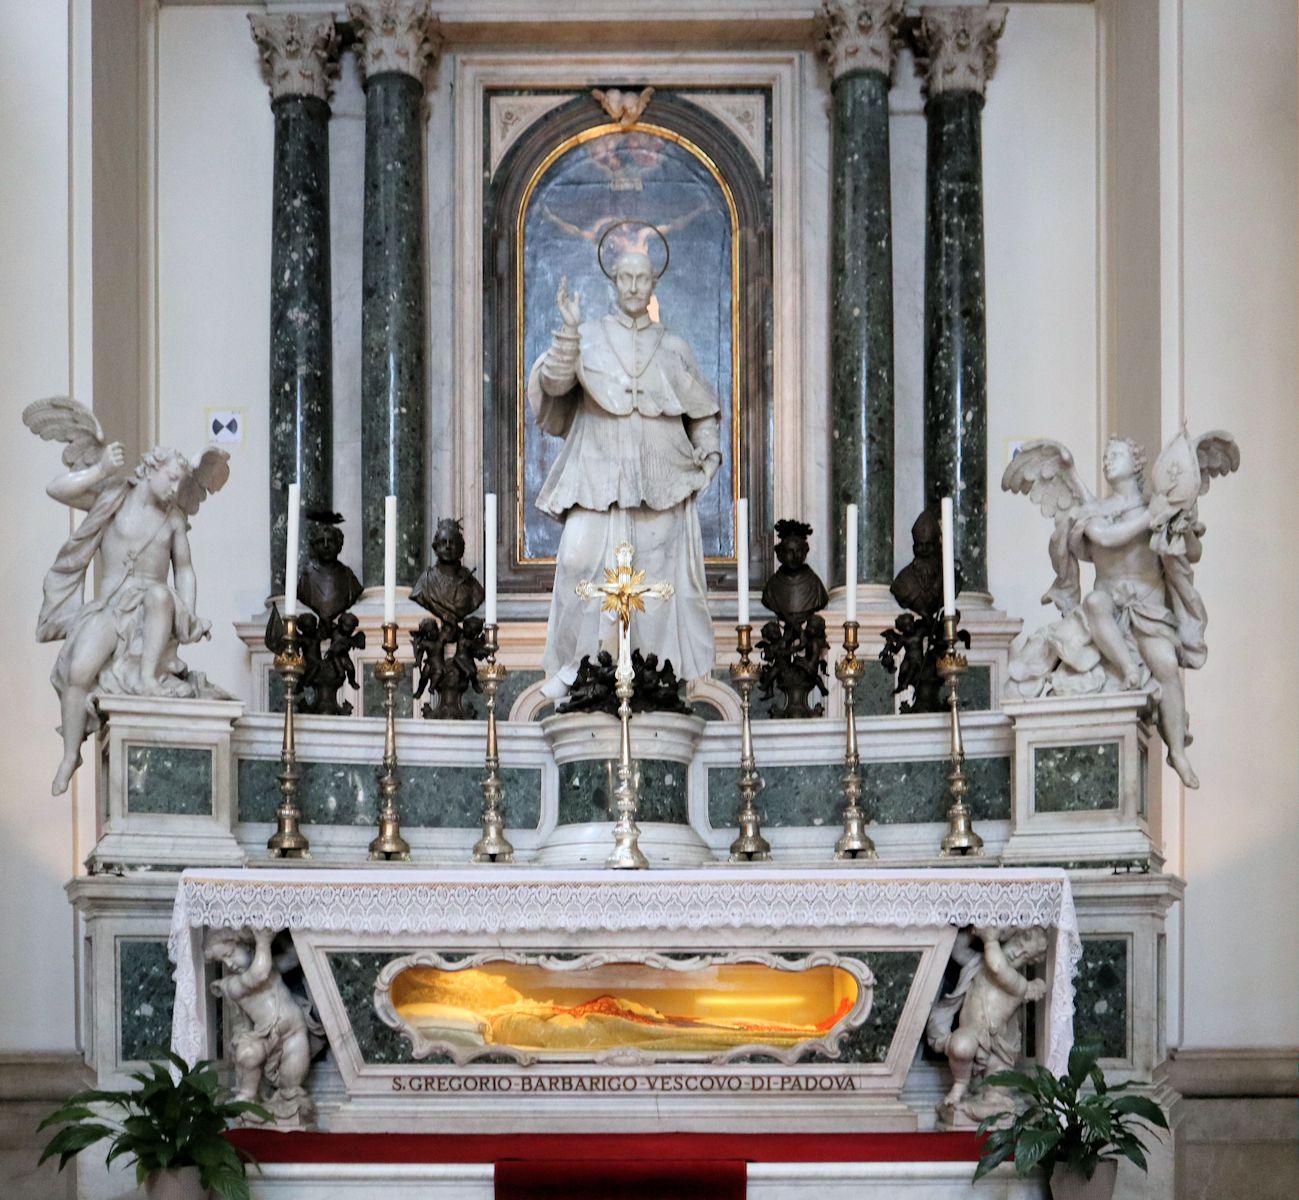 Giorgio Massari und Francesco Androsi: Altar mit Grab, Liegefigur und Statue von Gregor, 1762, in der Kathedrale in Padua